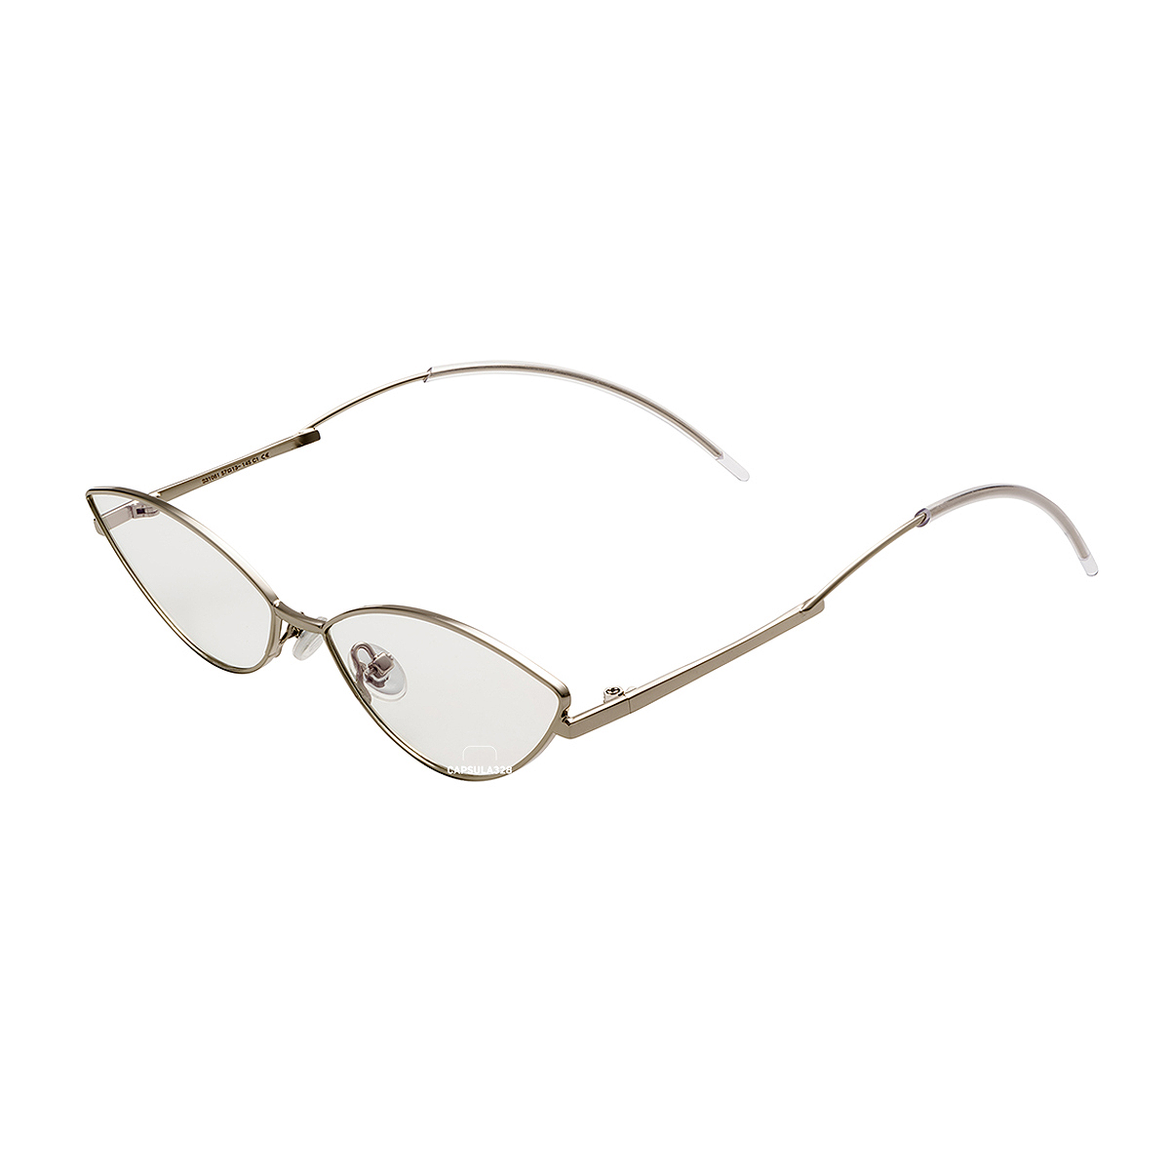 Имиджевые очки Gigi 8206